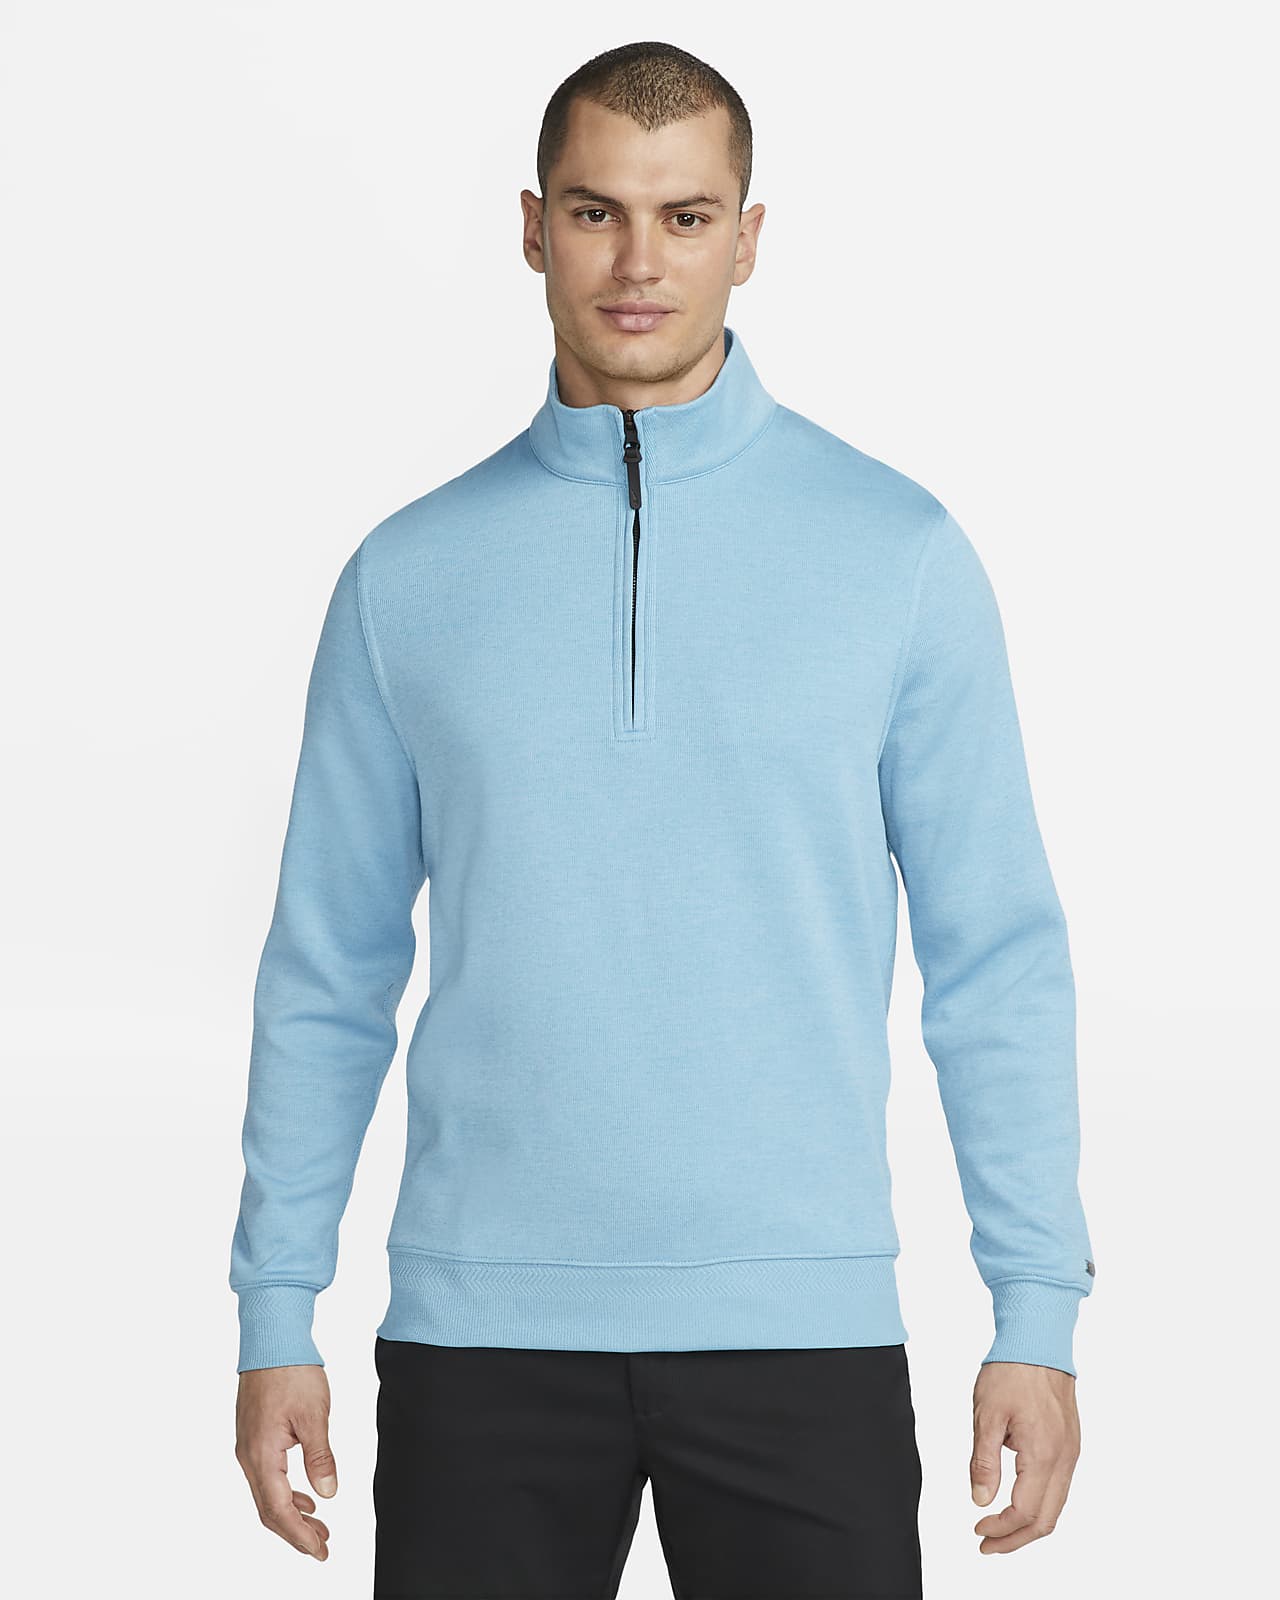 Men's Half Zip Sweater